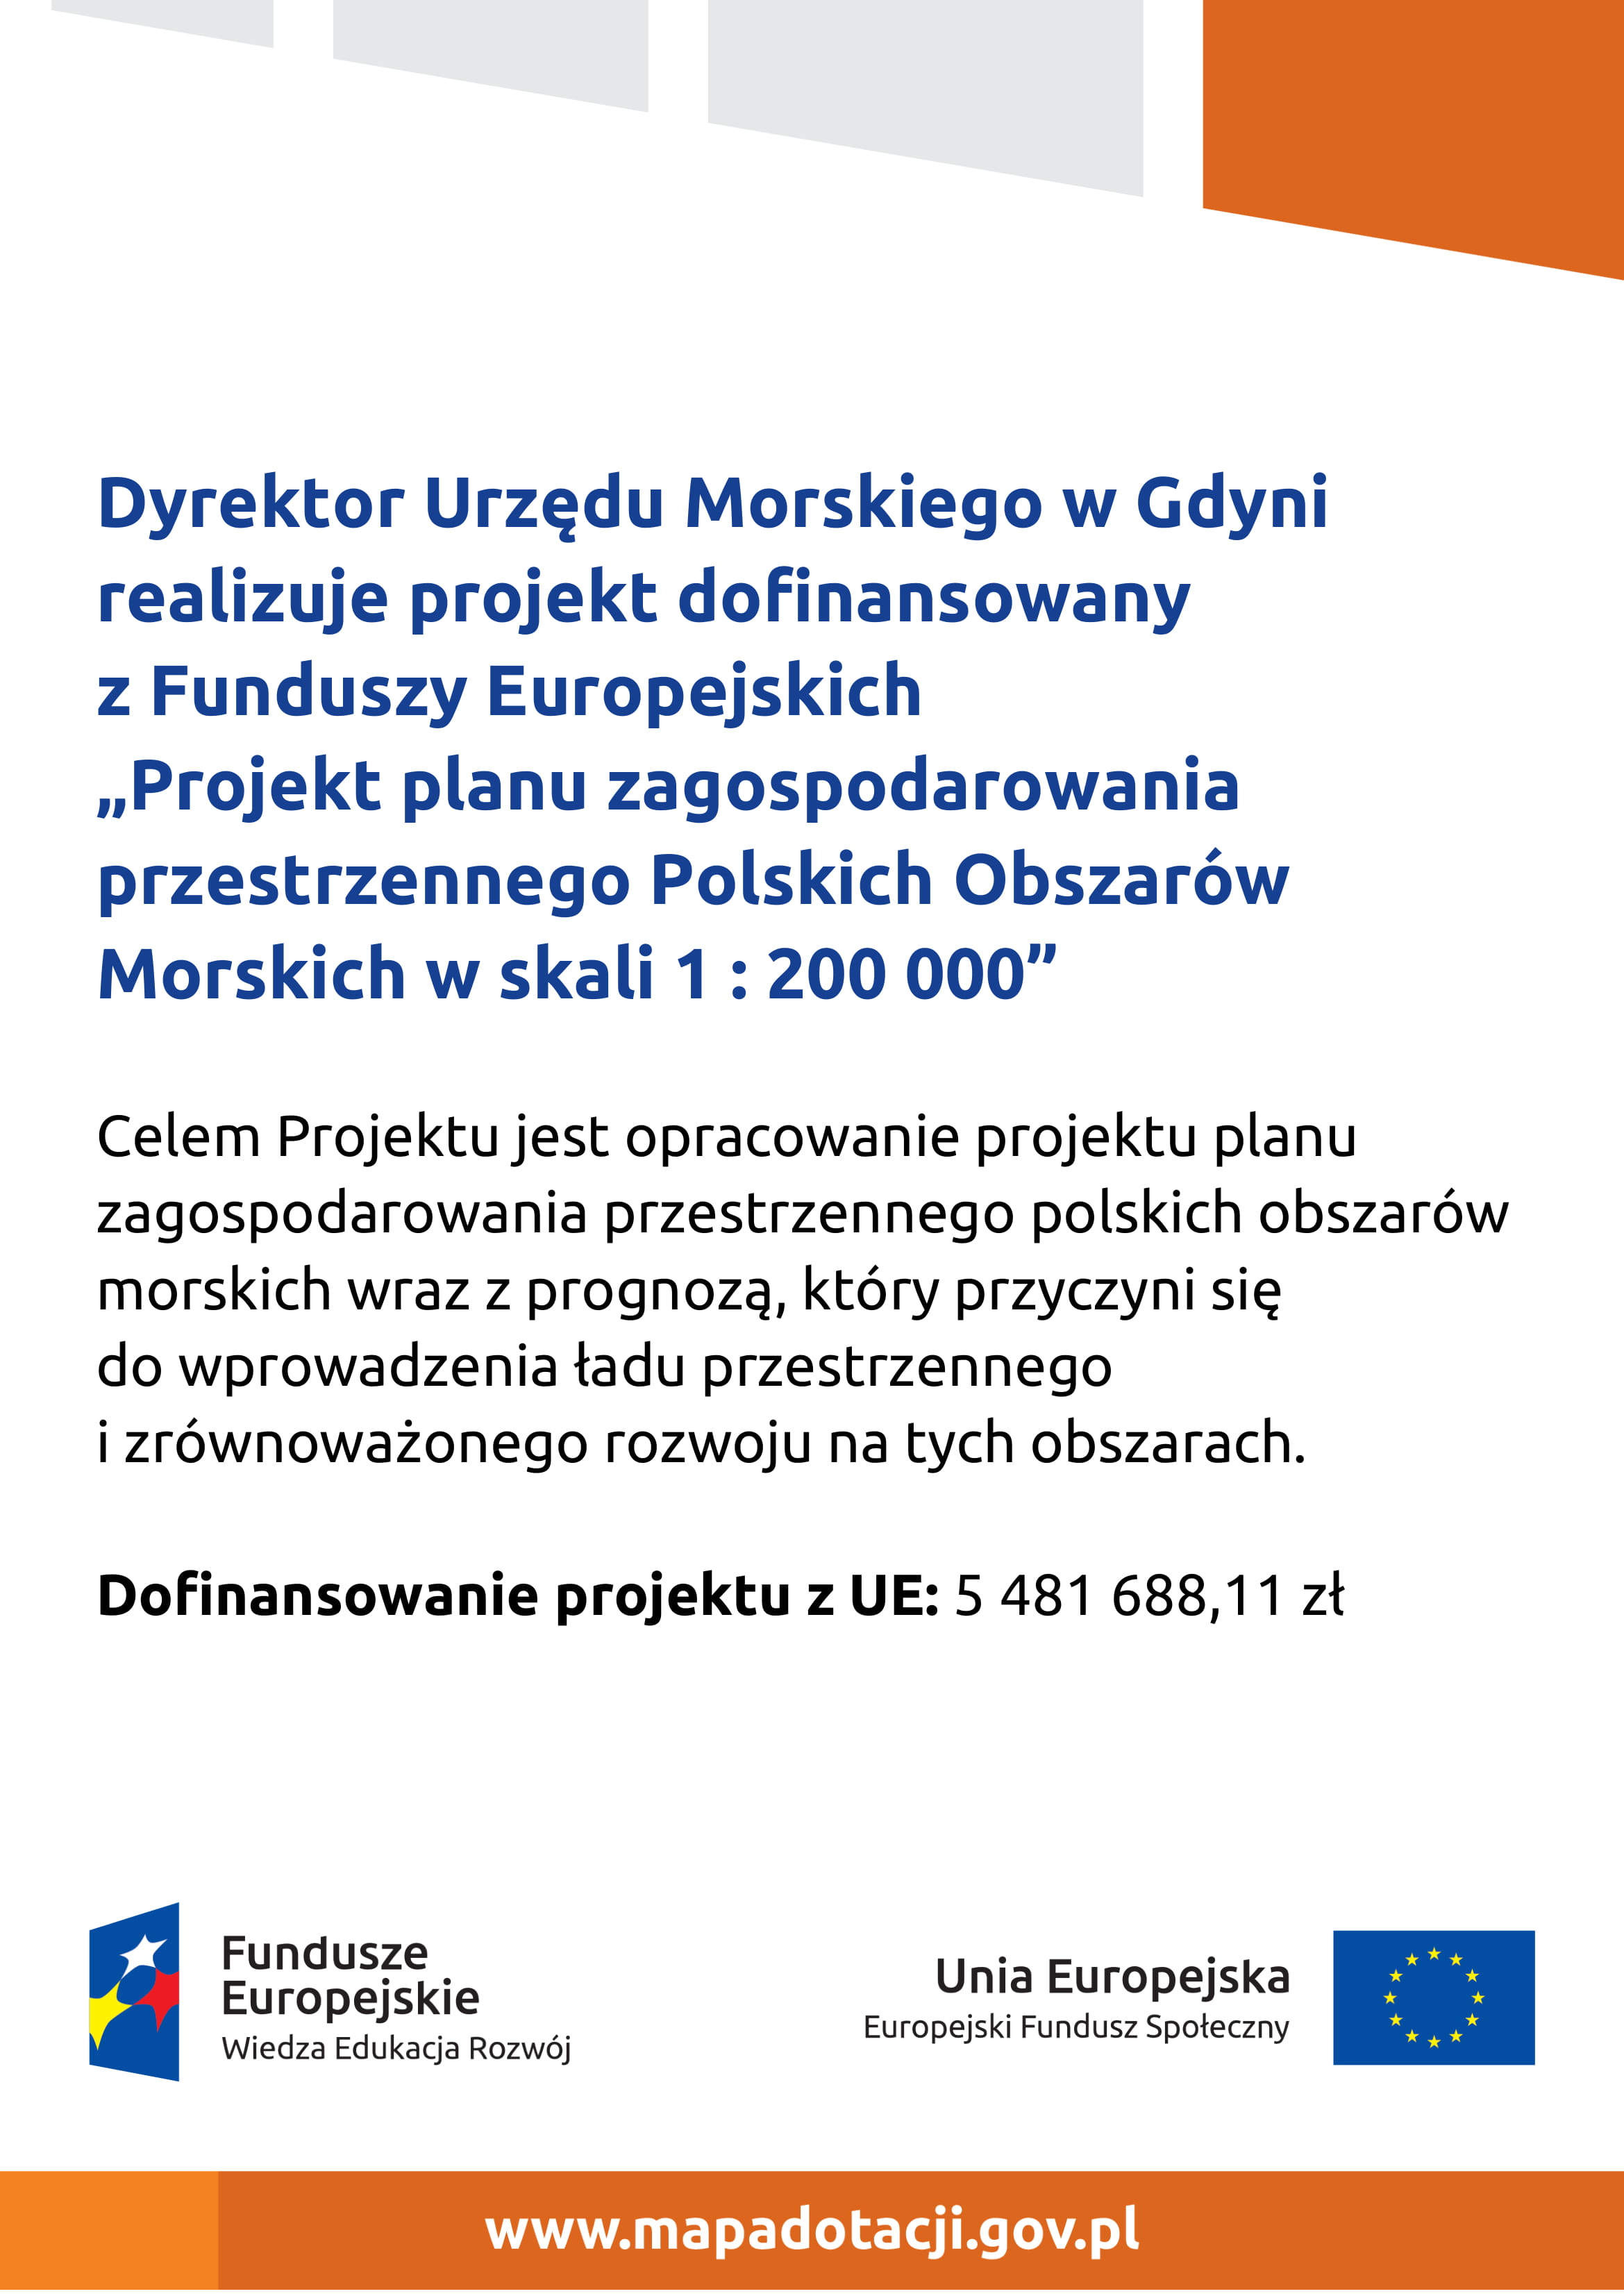 Plakat - Projekt planu zagospodarowania przestrzennego polskich obszarów morskich w skali 1: 200 000